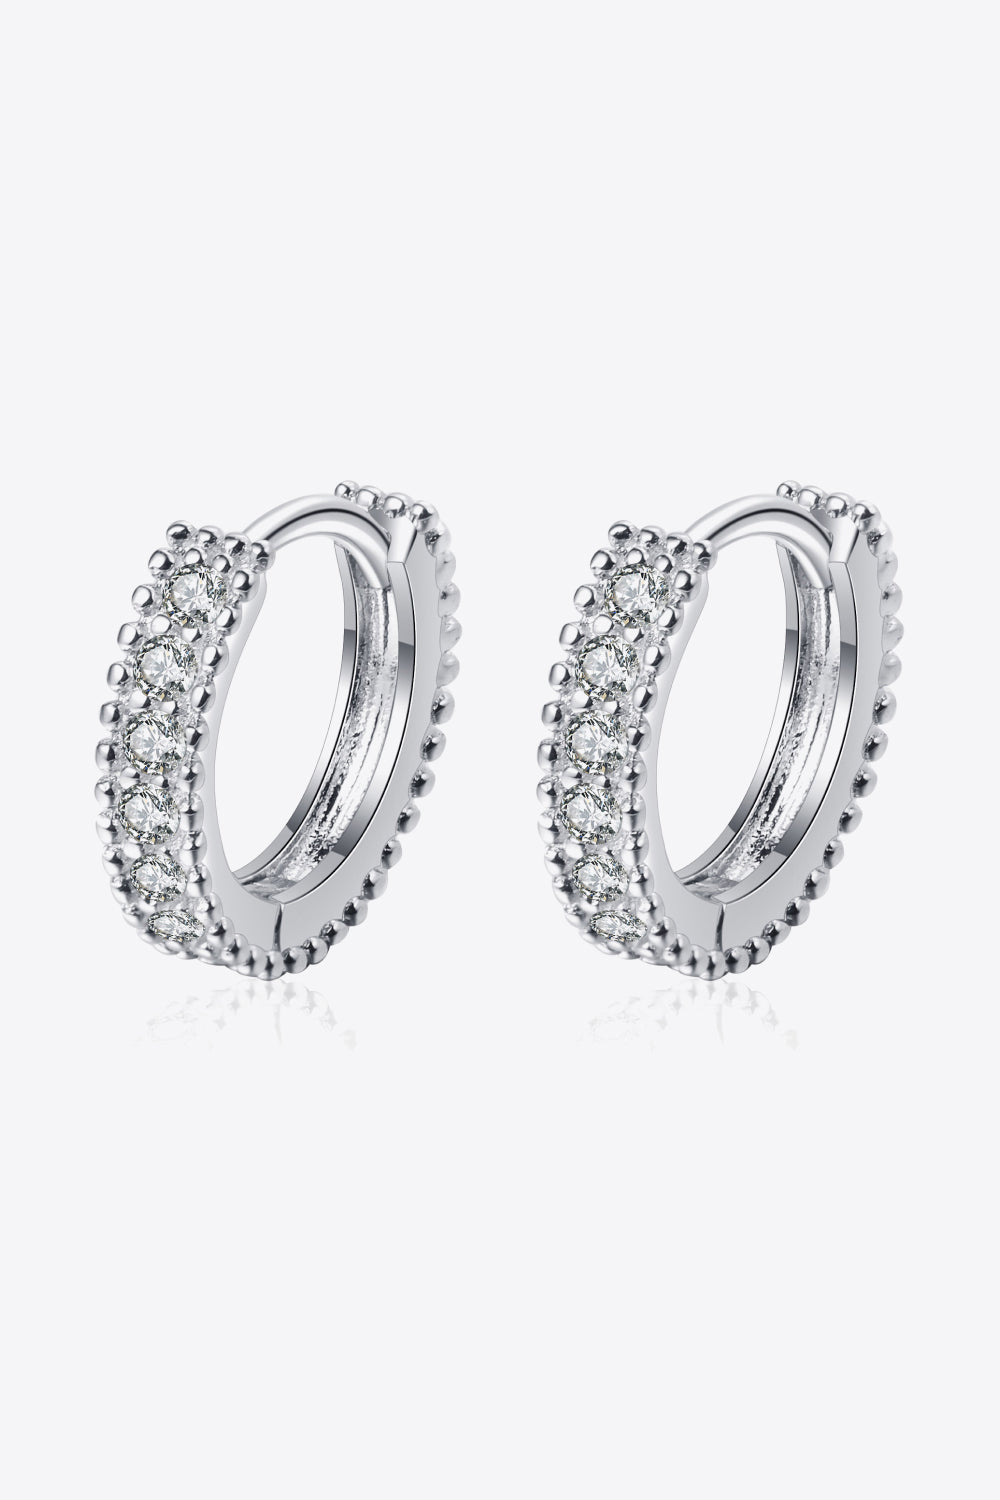 925 Sterling Silver Inlaid Moissanite Huggie Earrings - Earrings - FITGGINS